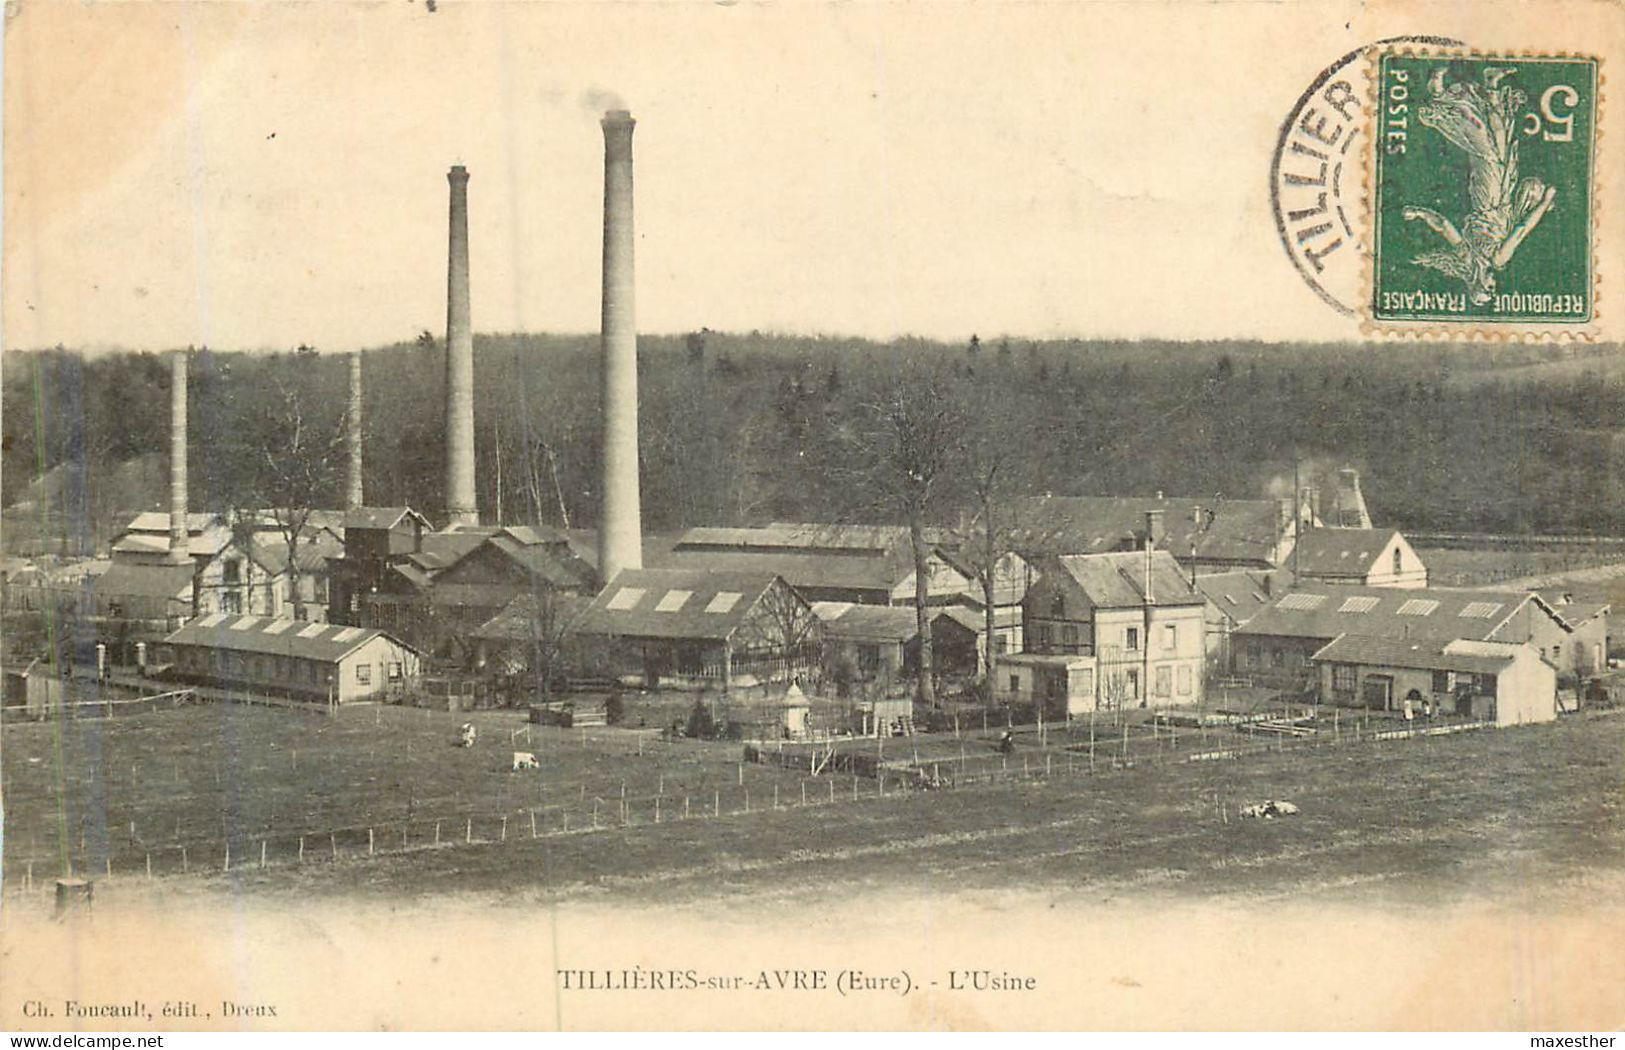 TILLIÊRES EN AVRE L'usine - Tillières-sur-Avre